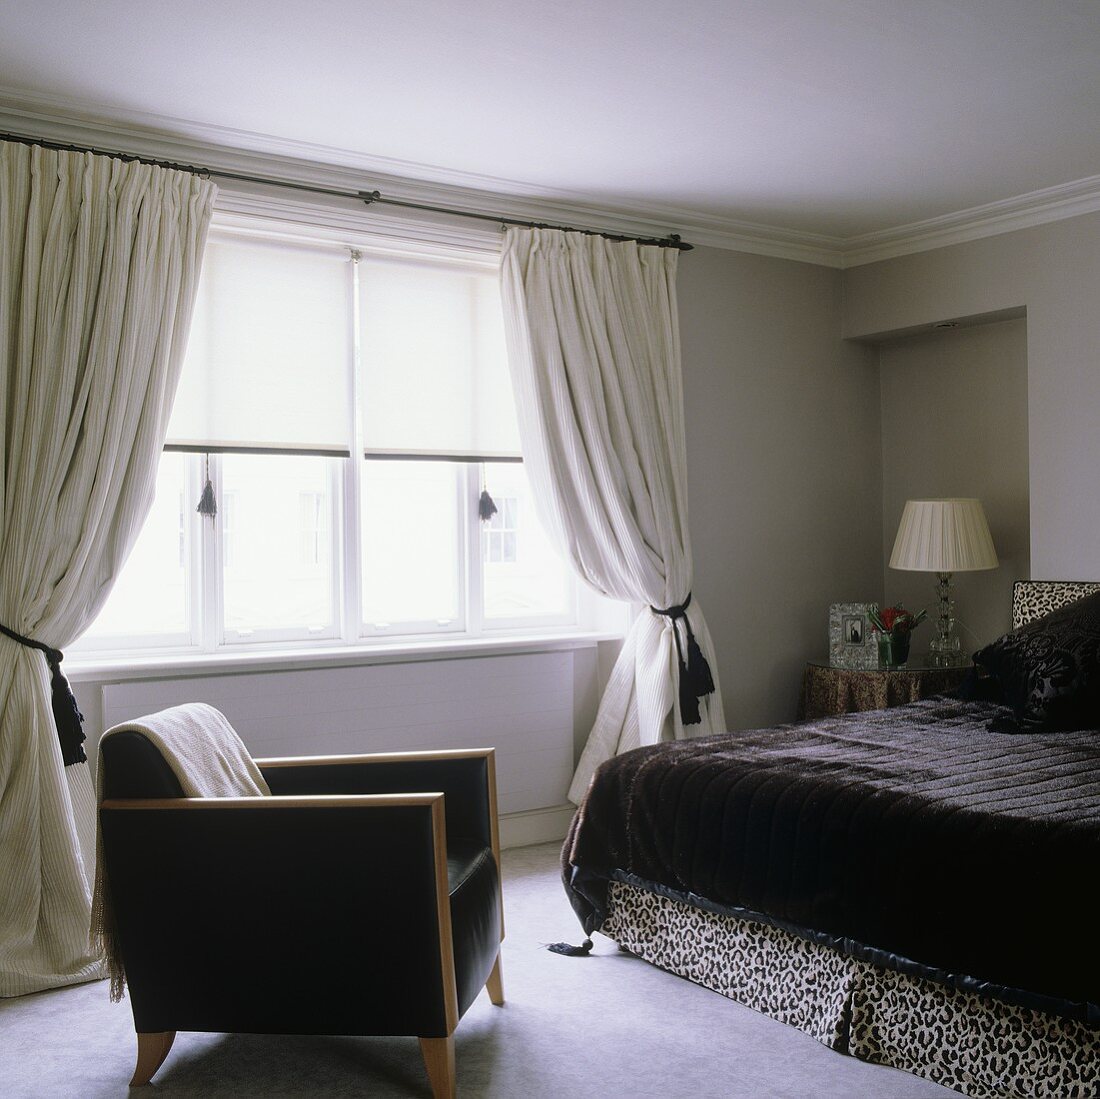 Schwarzer Ledersessel und Doppelbett mit schwarzer Felltagesdecke vor Fenster mit gerafftem Vorhang